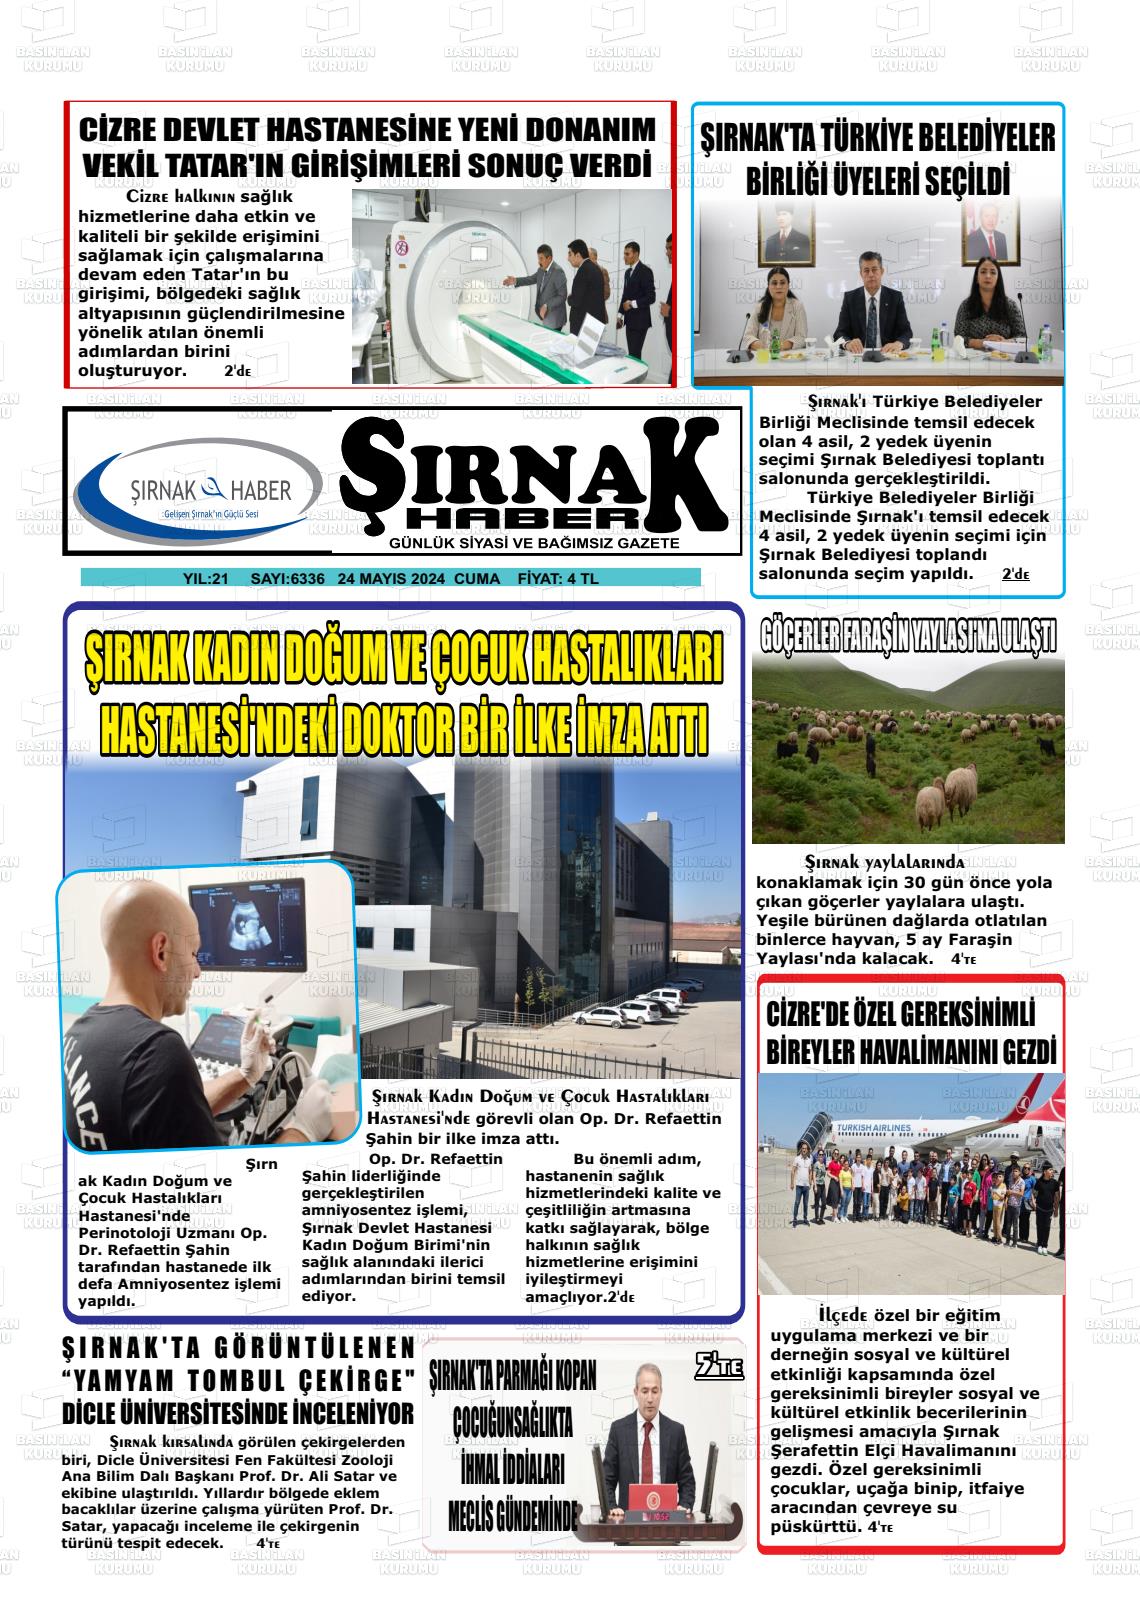 ŞIRNAK HABER Gazetesi